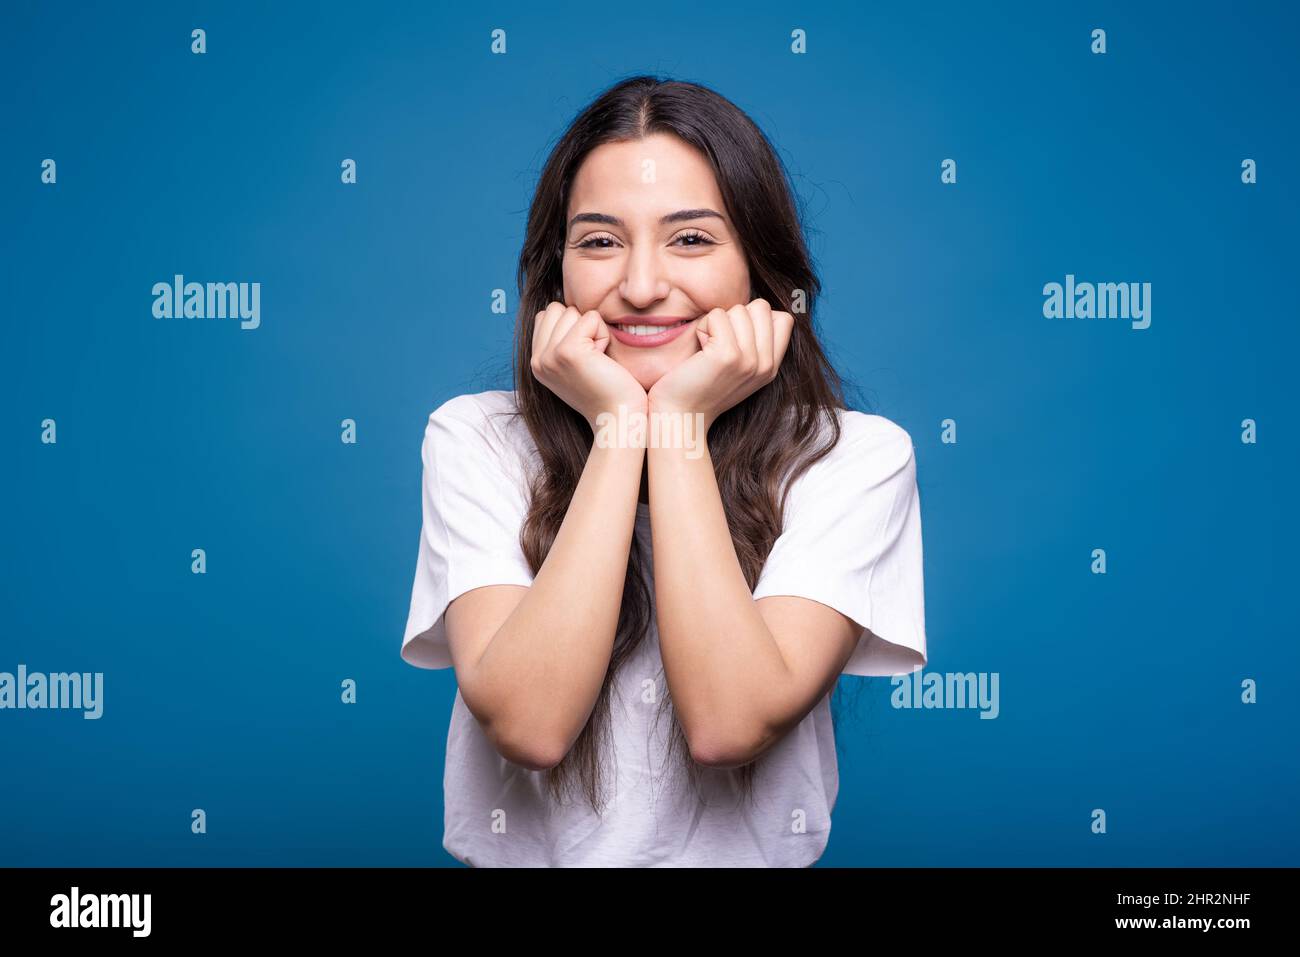 Portrait von glücklichen und attraktiven kaukasischen oder arabischen Brünette Mädchen in weißem T-Shirt isoliert auf blauem Studio-Hintergrund. Stockfoto